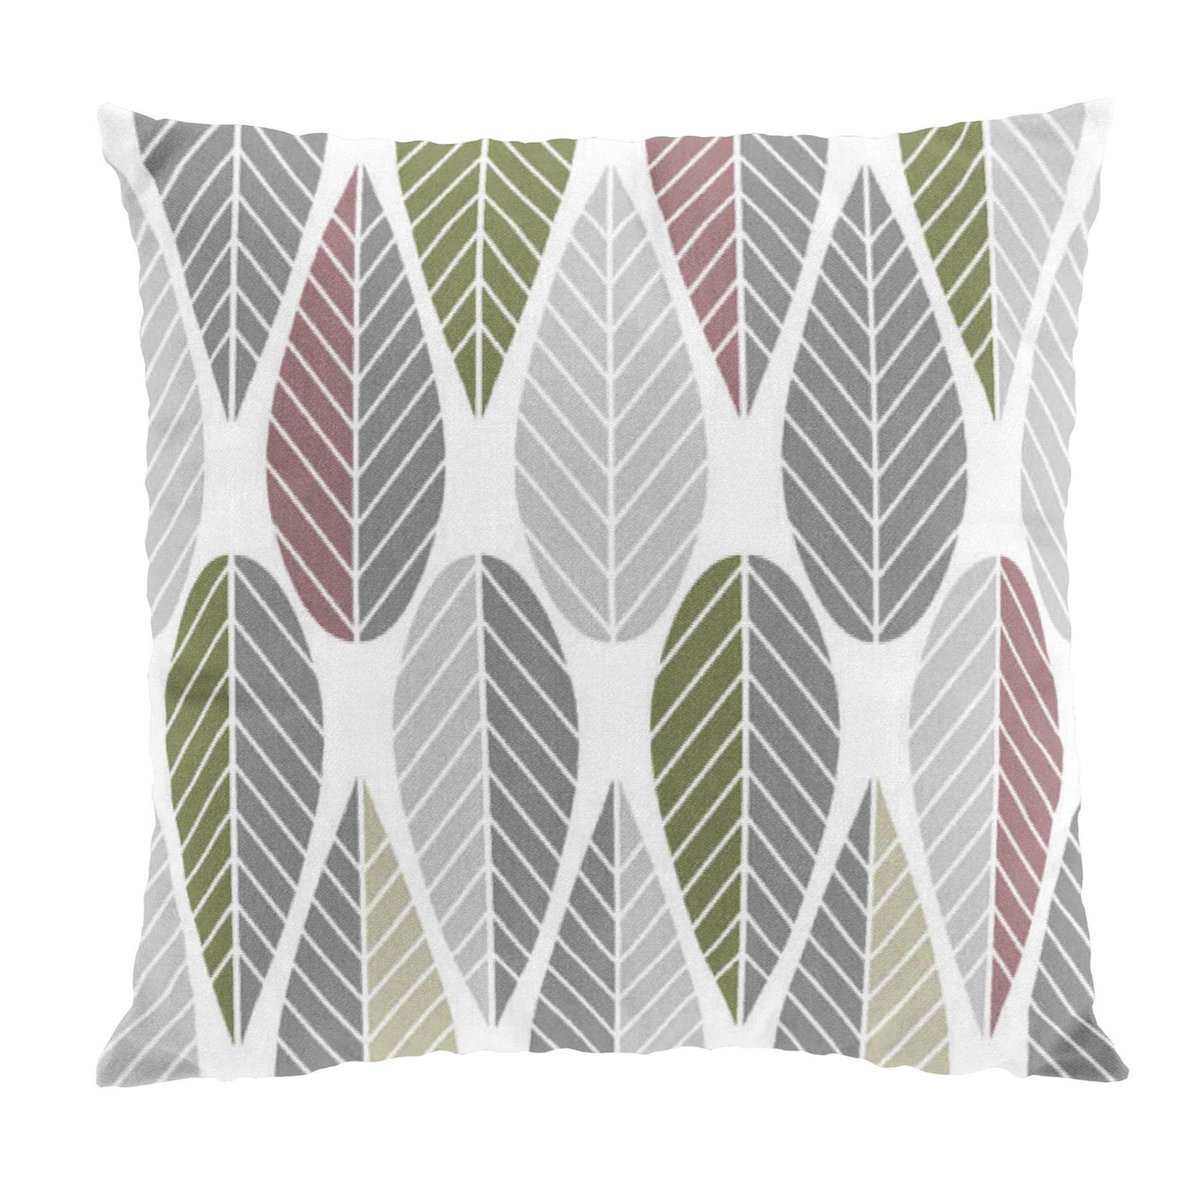 Bilde av Arvidssons Textil Blader putetrekk rosa-grå-grønn